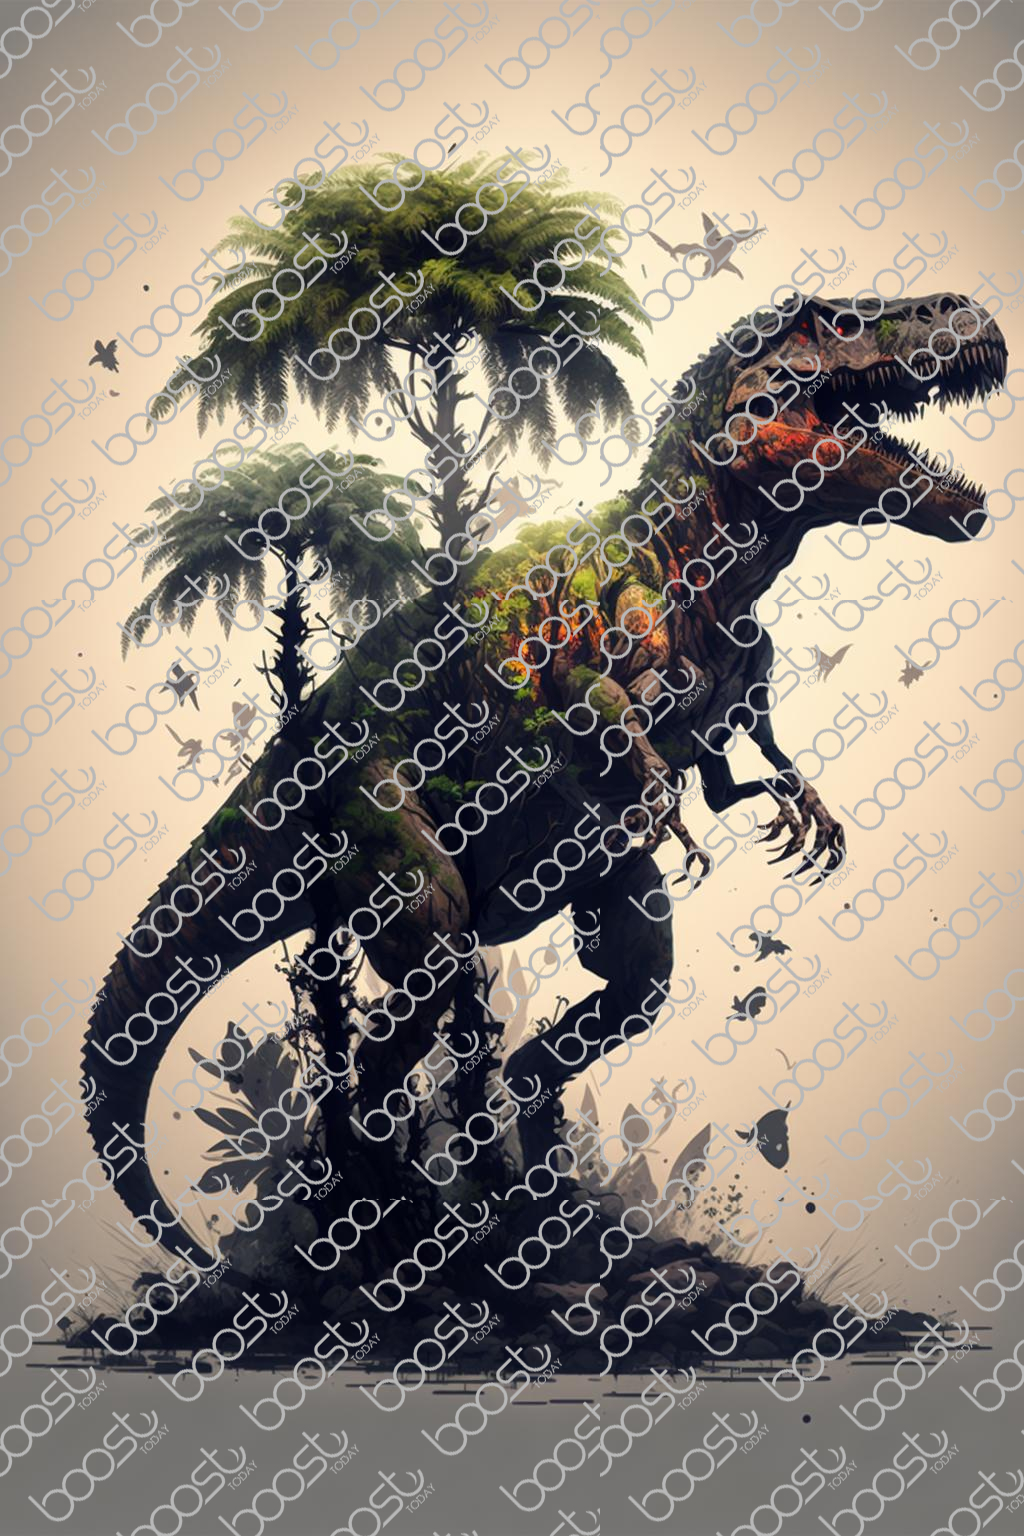 אנימציה מודרנית, t-rex, עצי ג'ונגל